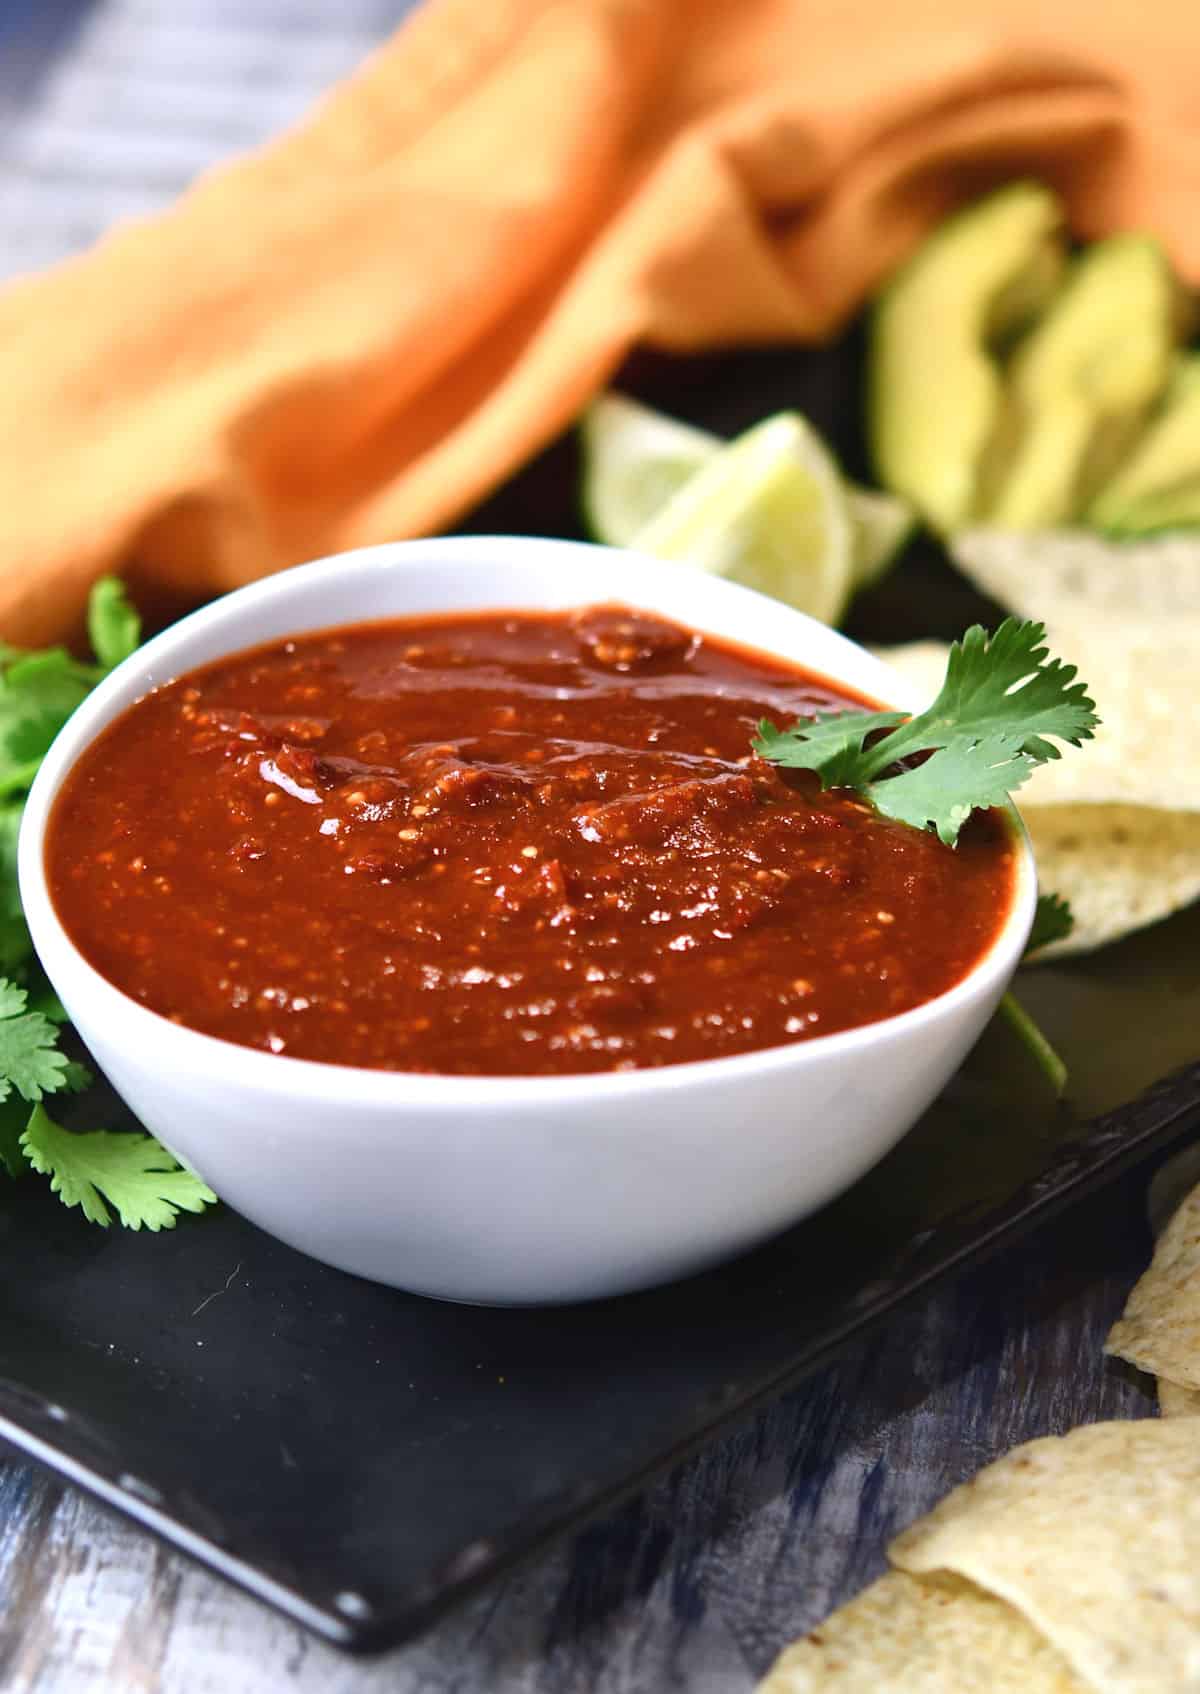 24Bite: Tomatillo Red Chili Sauce Recipe by Christian Guzman